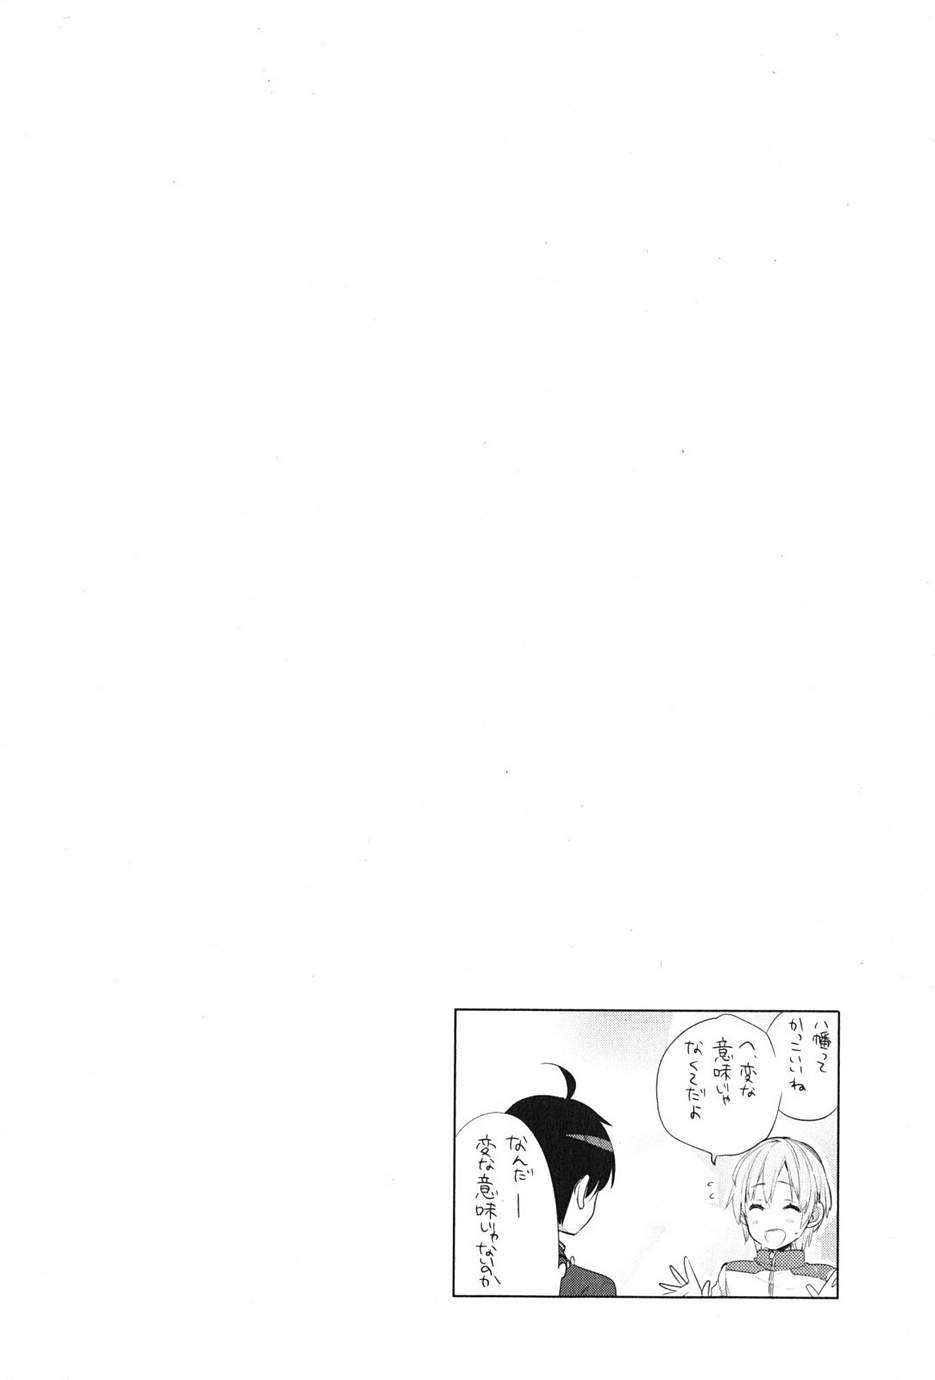 Yahari Ore no Seishun Rabukome wa Machigatte Iru. - Monologue - Chapter 37 - Page 44